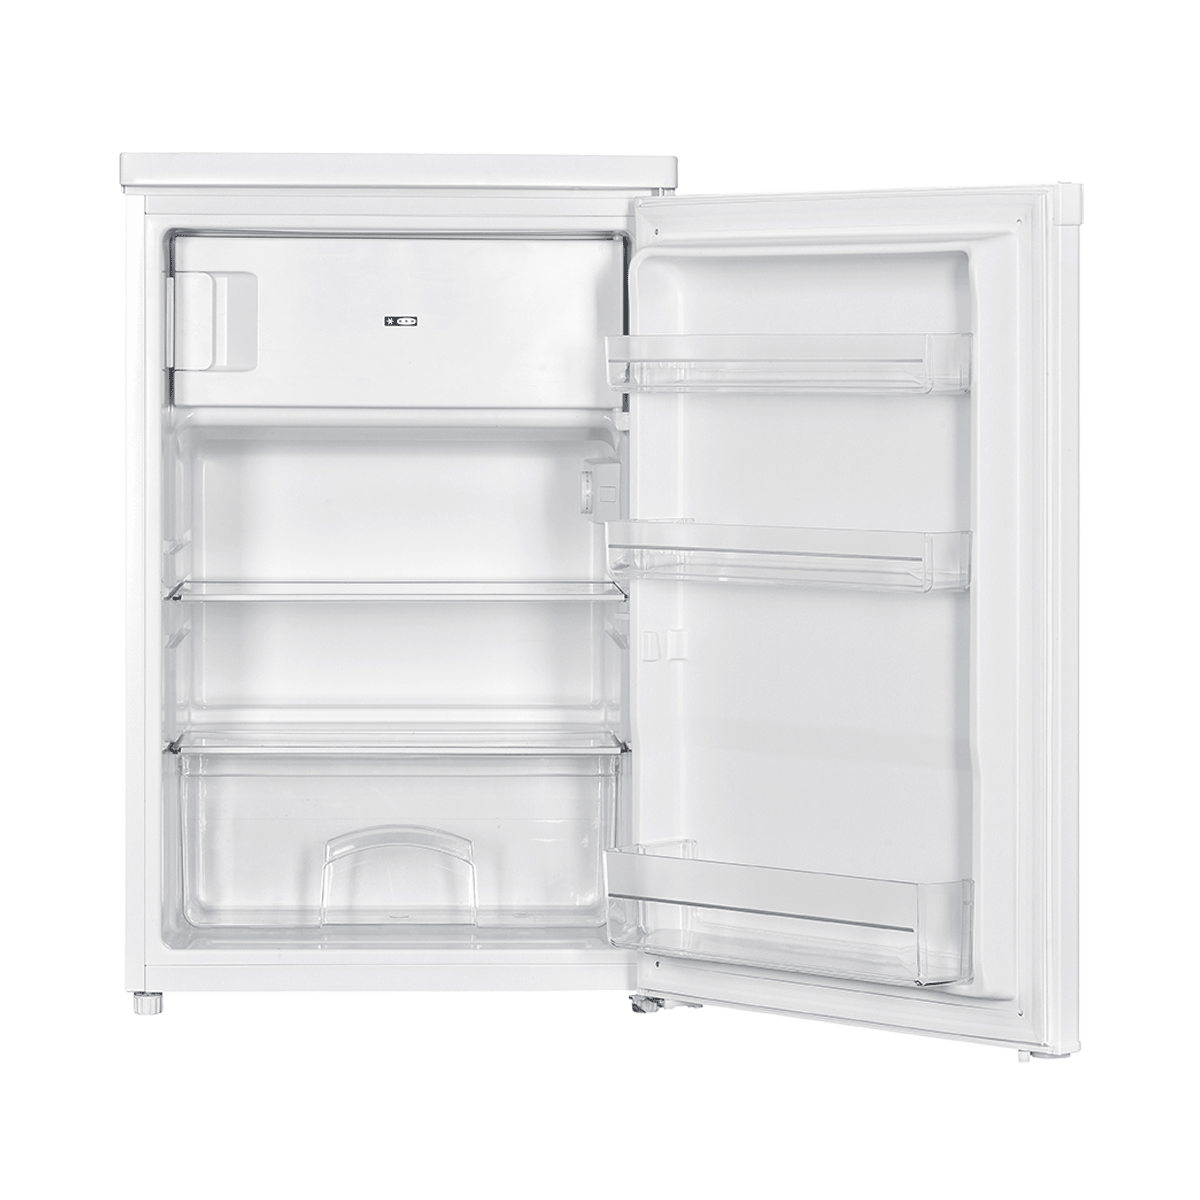 Refrigerator KS 1610 E 